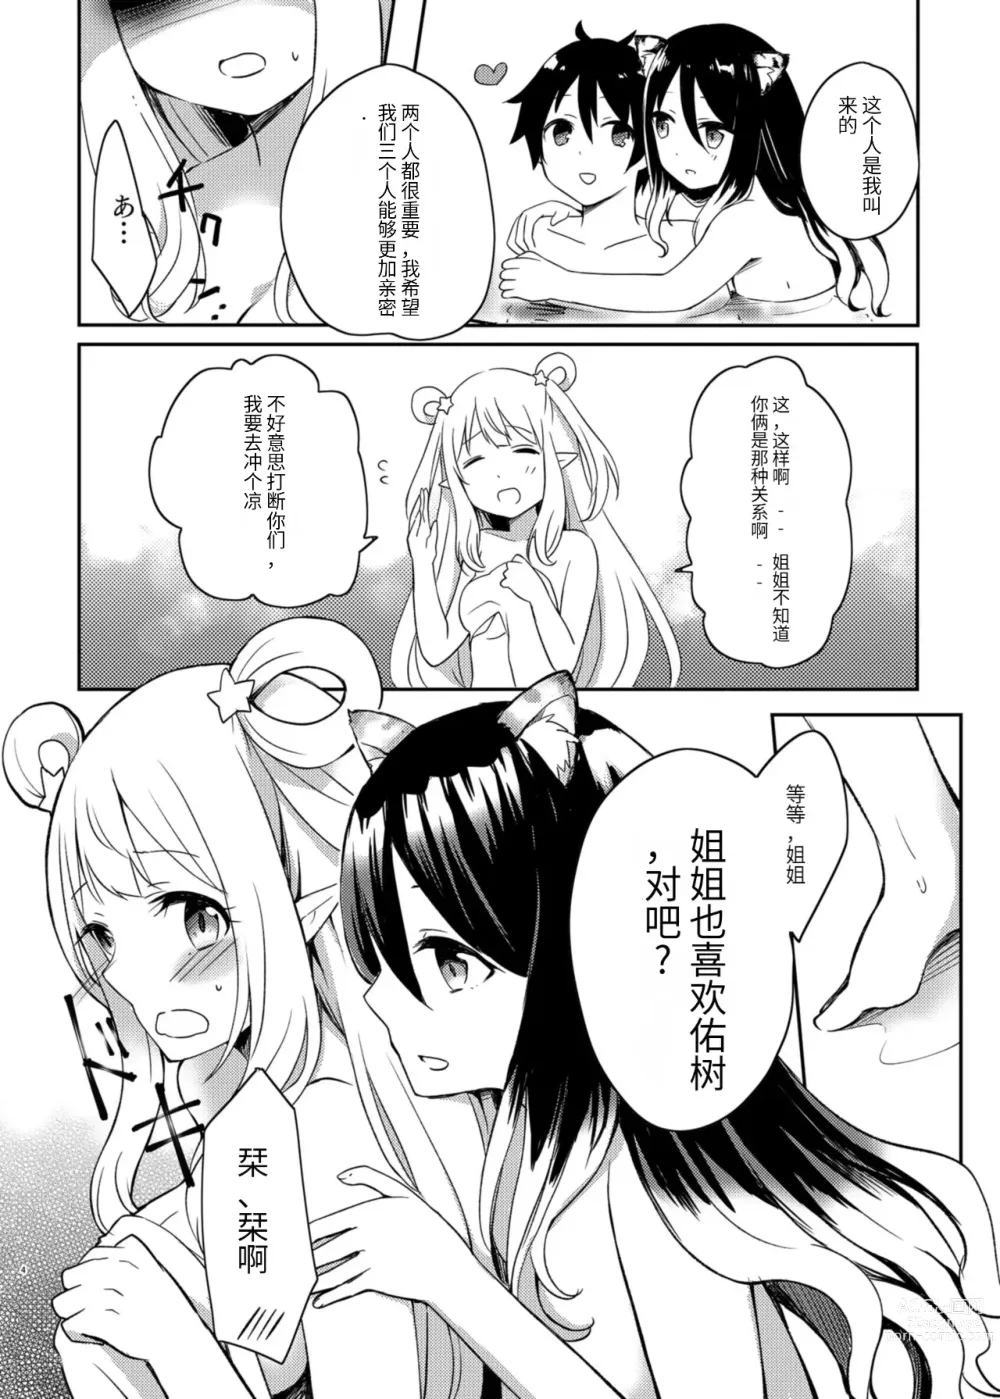 Page 4 of doujinshi Hatsune to Shiori no Yukemuri Daisakusen